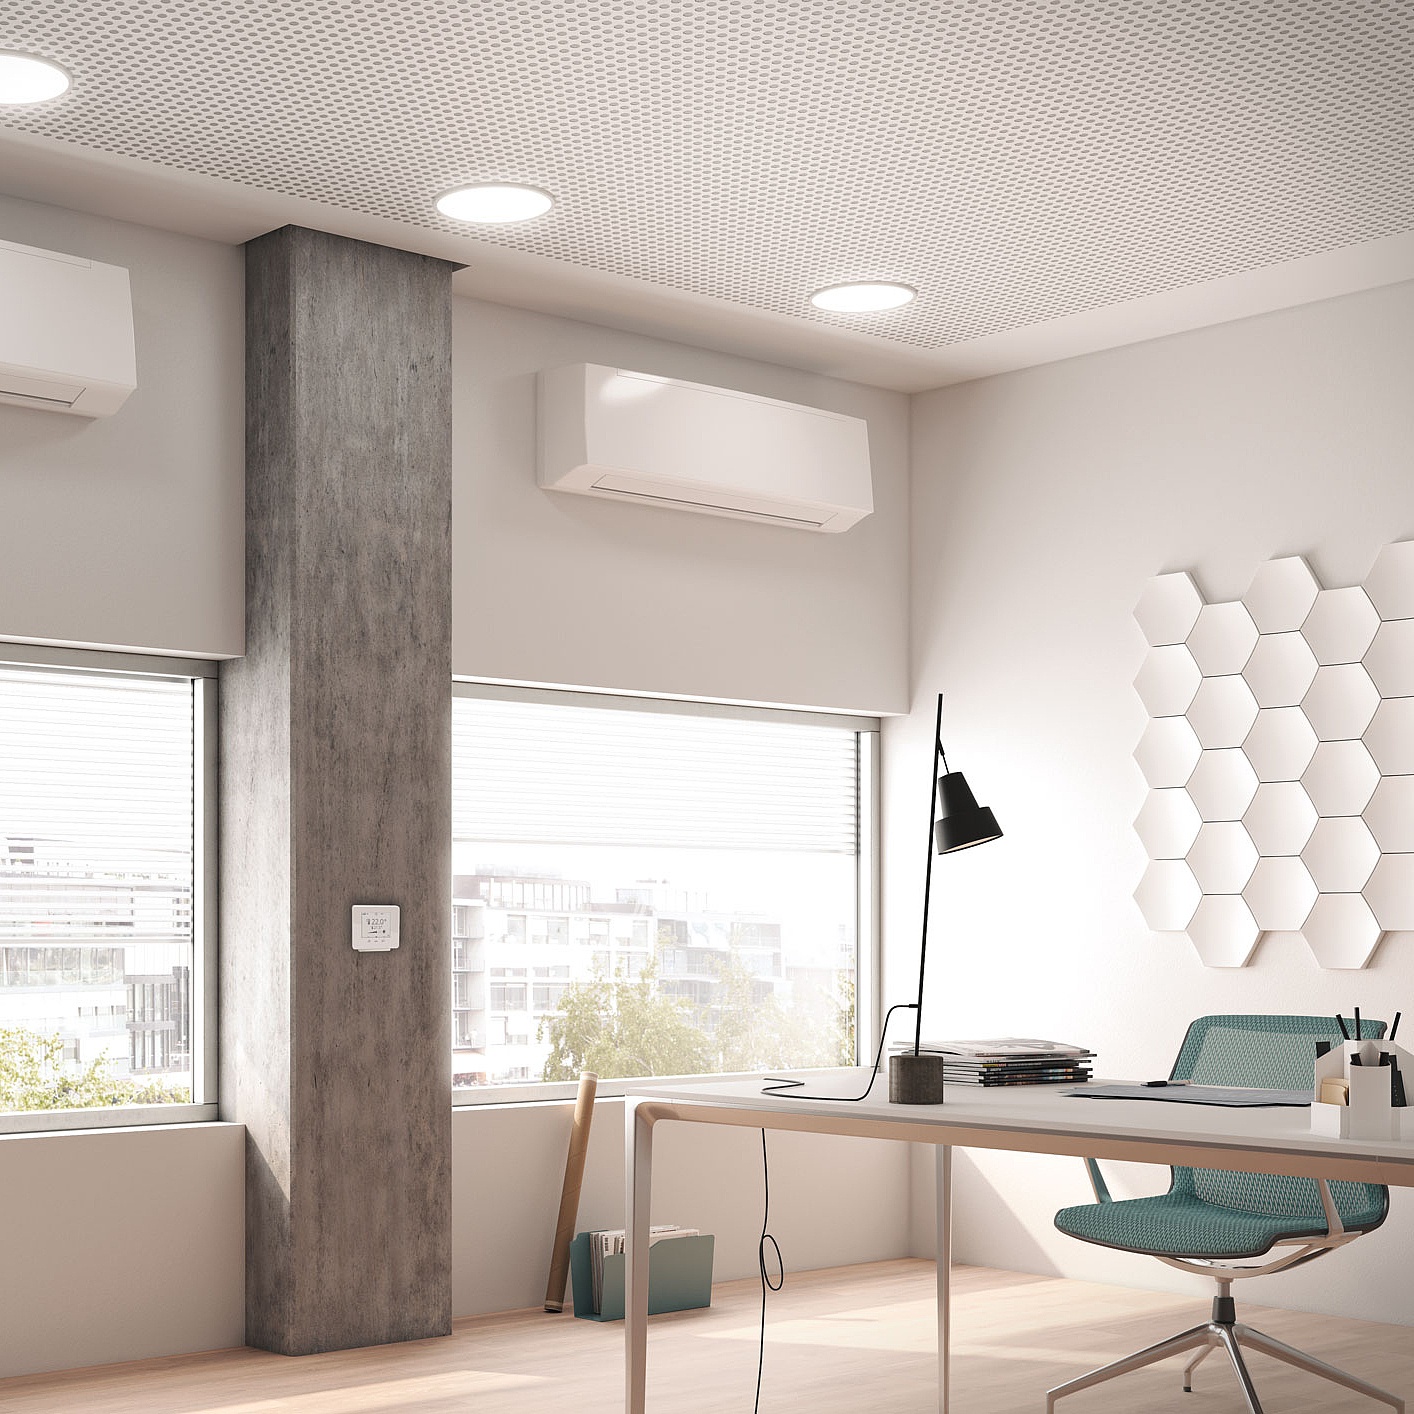 Фанкойлы Arbonia Condiline в виде настенного оборудования – поддержание температуры в офисе и квартире